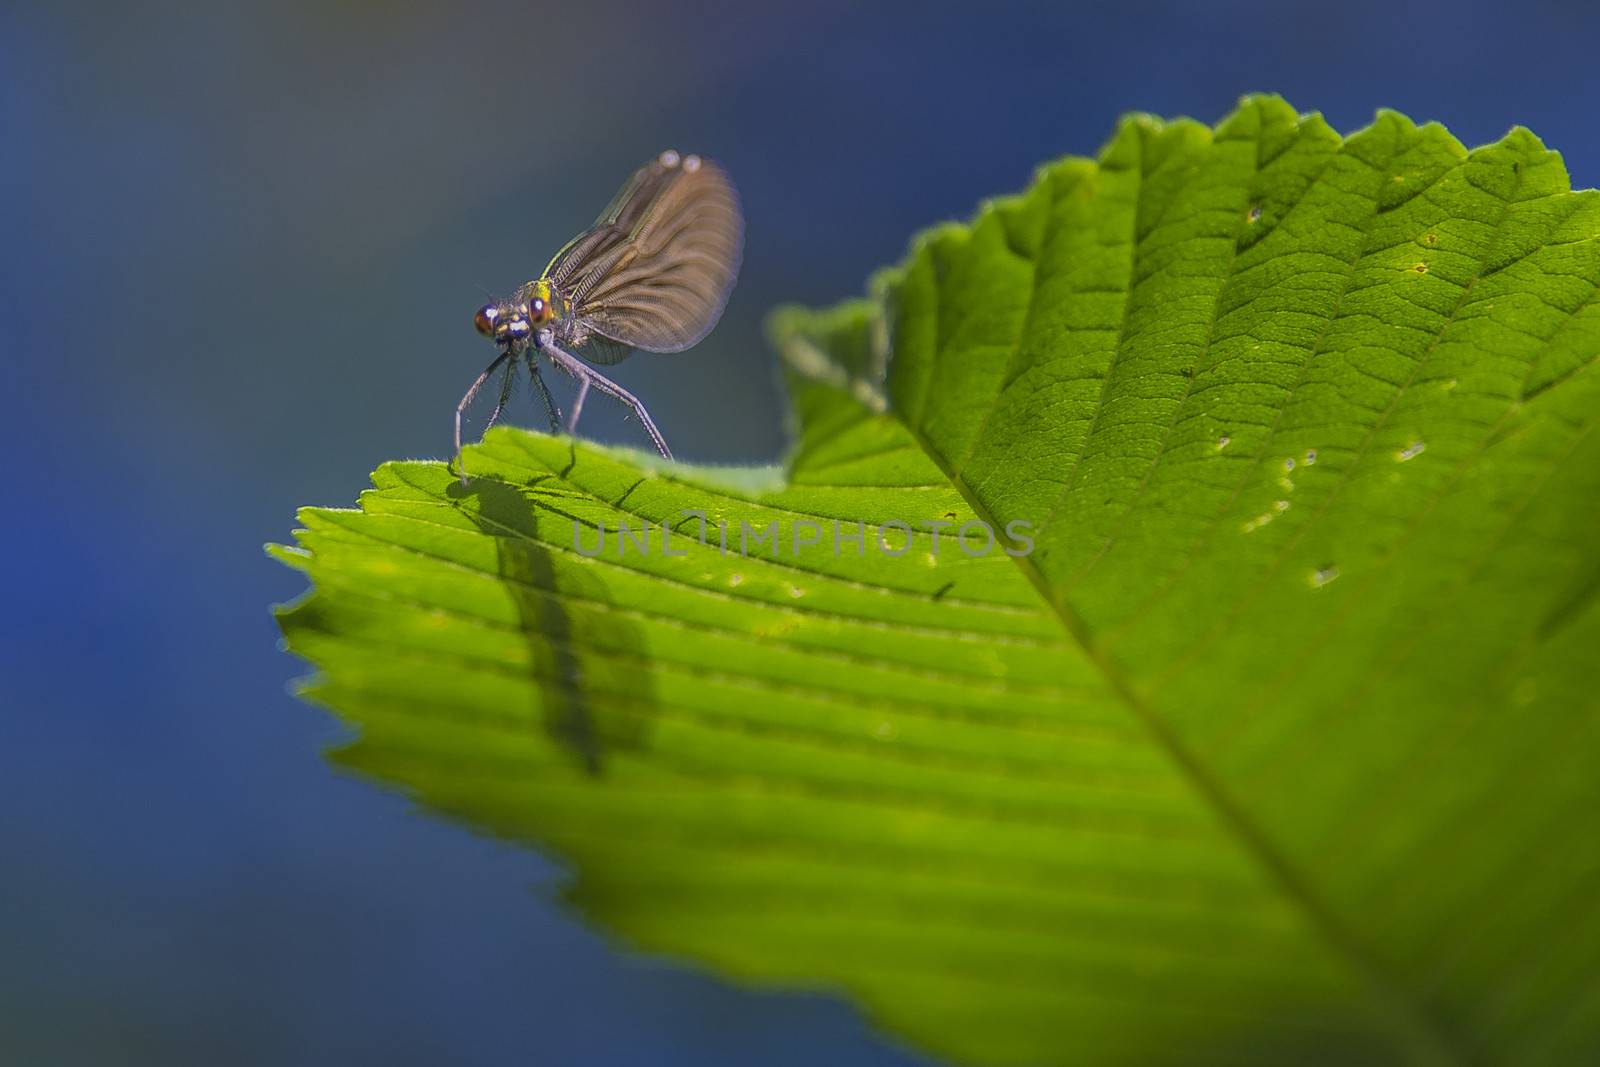 bug on a leaf by steirus